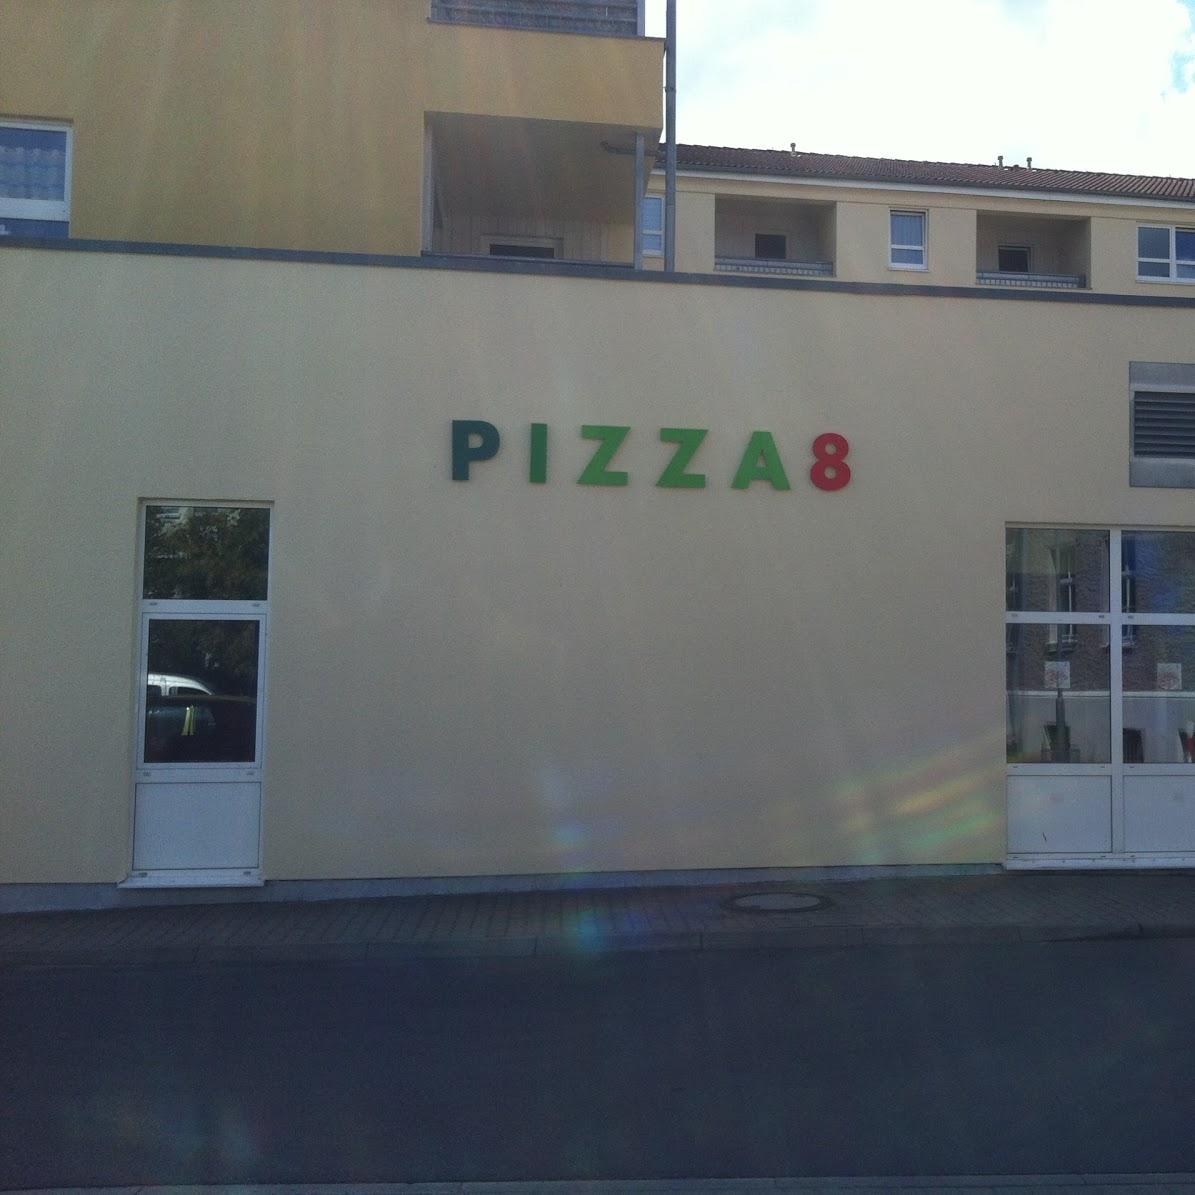 Restaurant "Pizza 8" in Oranienburg